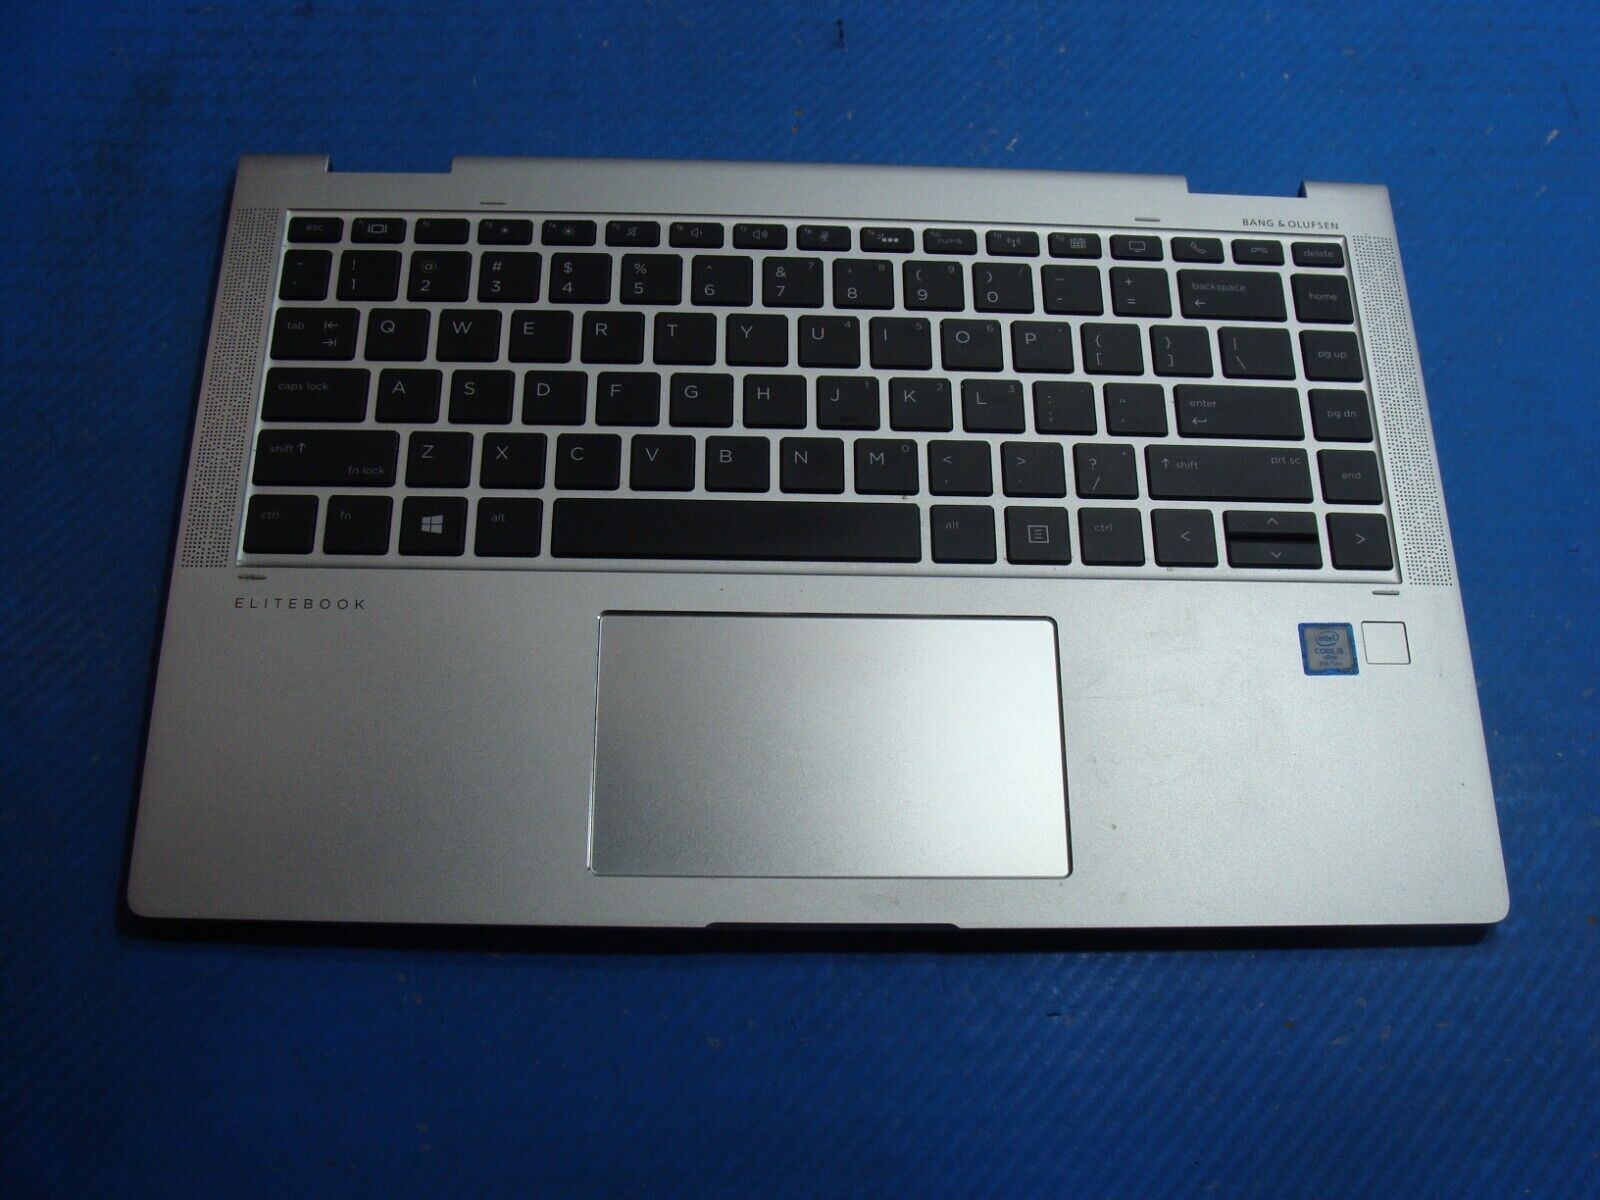 HP EliteBook x360 1040 G6 14